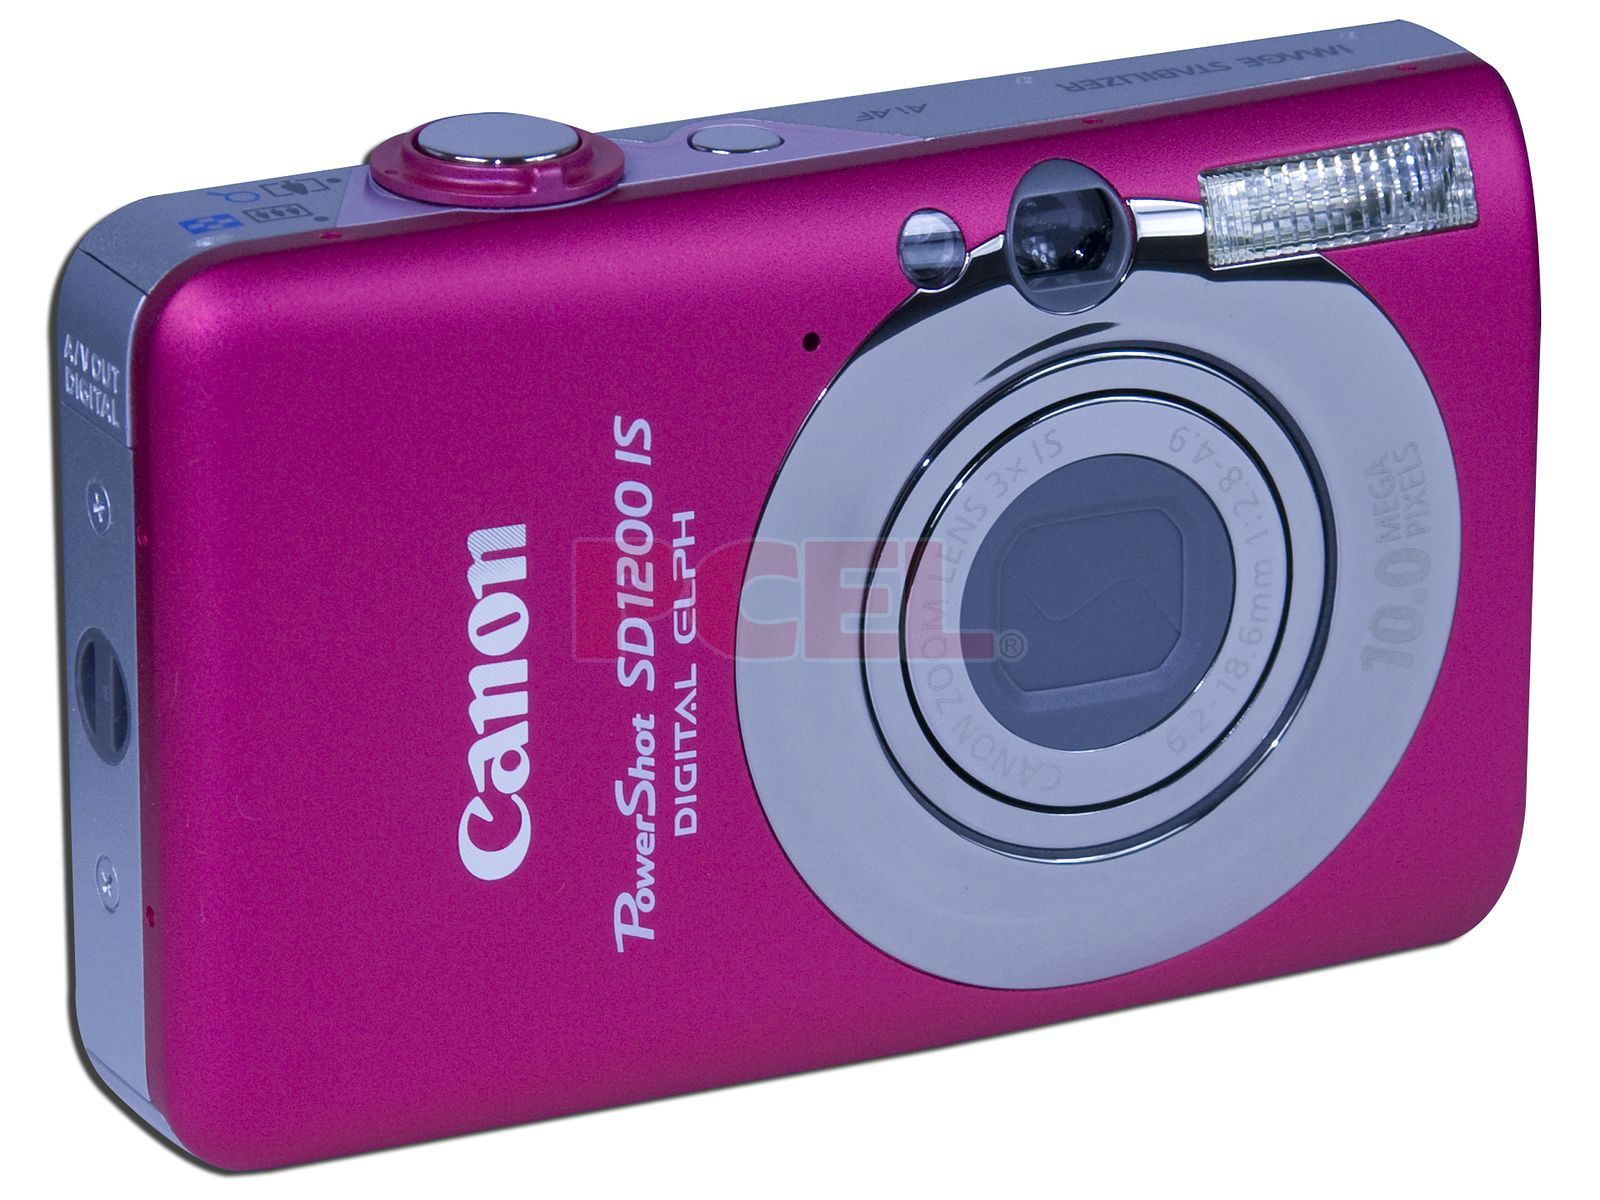 Cámara Fotográfica Digital Canon PowerShot SD1200 IS, 10.0MP. Color Rosa.  Incluye memoria SD de 2GB y estuche Golla